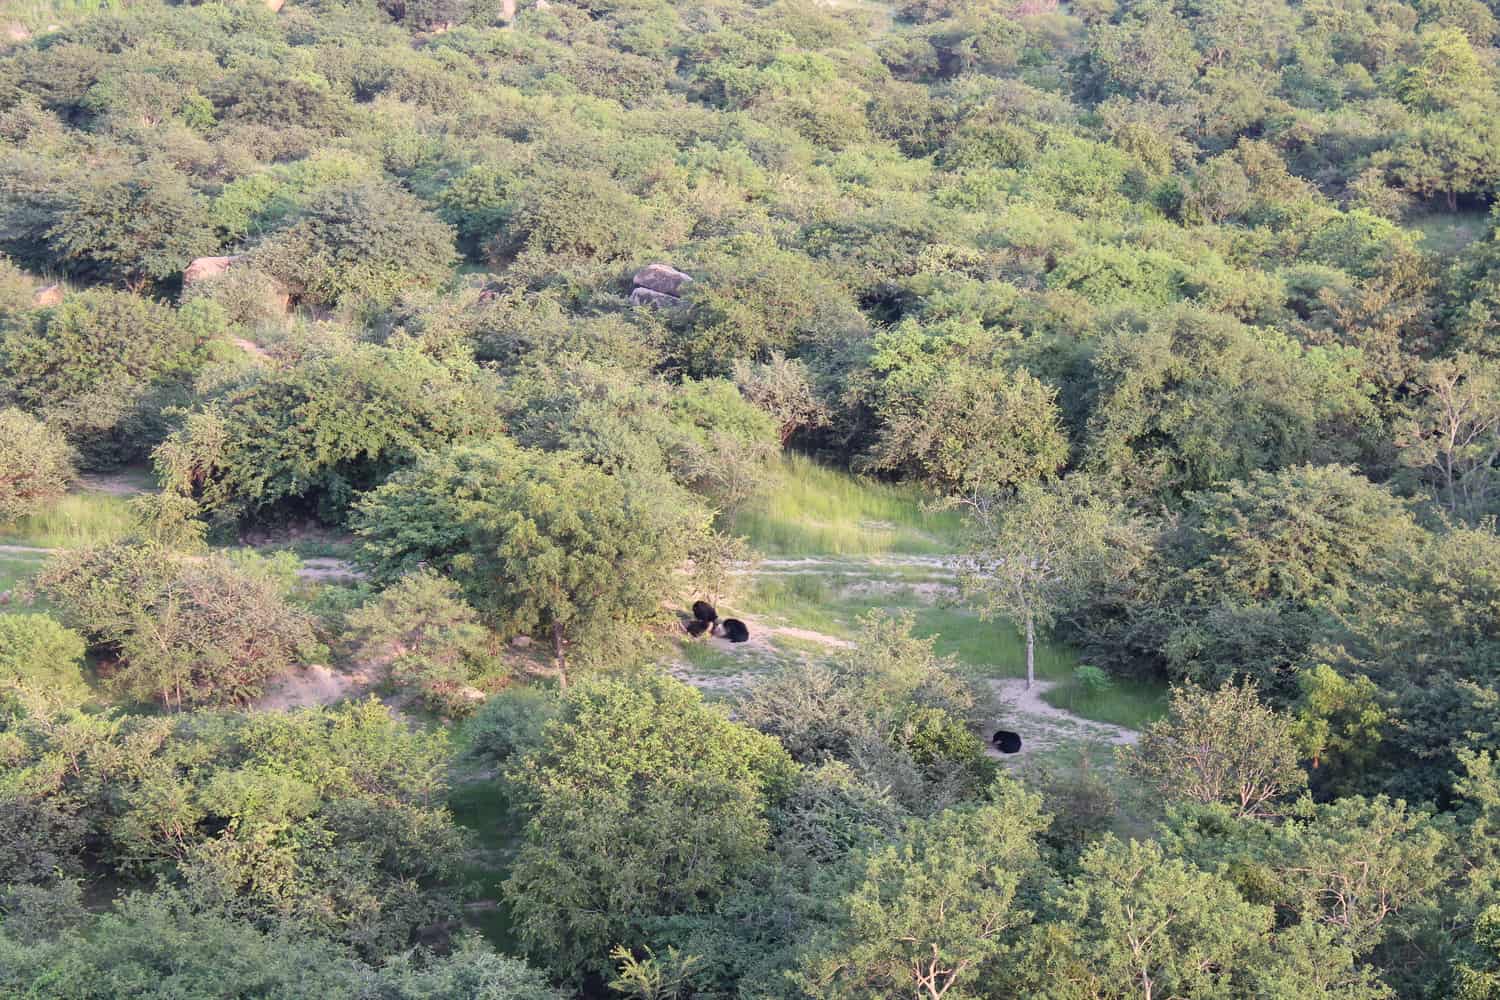 Sloth bears at the Daroji sanctuary, near Hampi, Karnataka